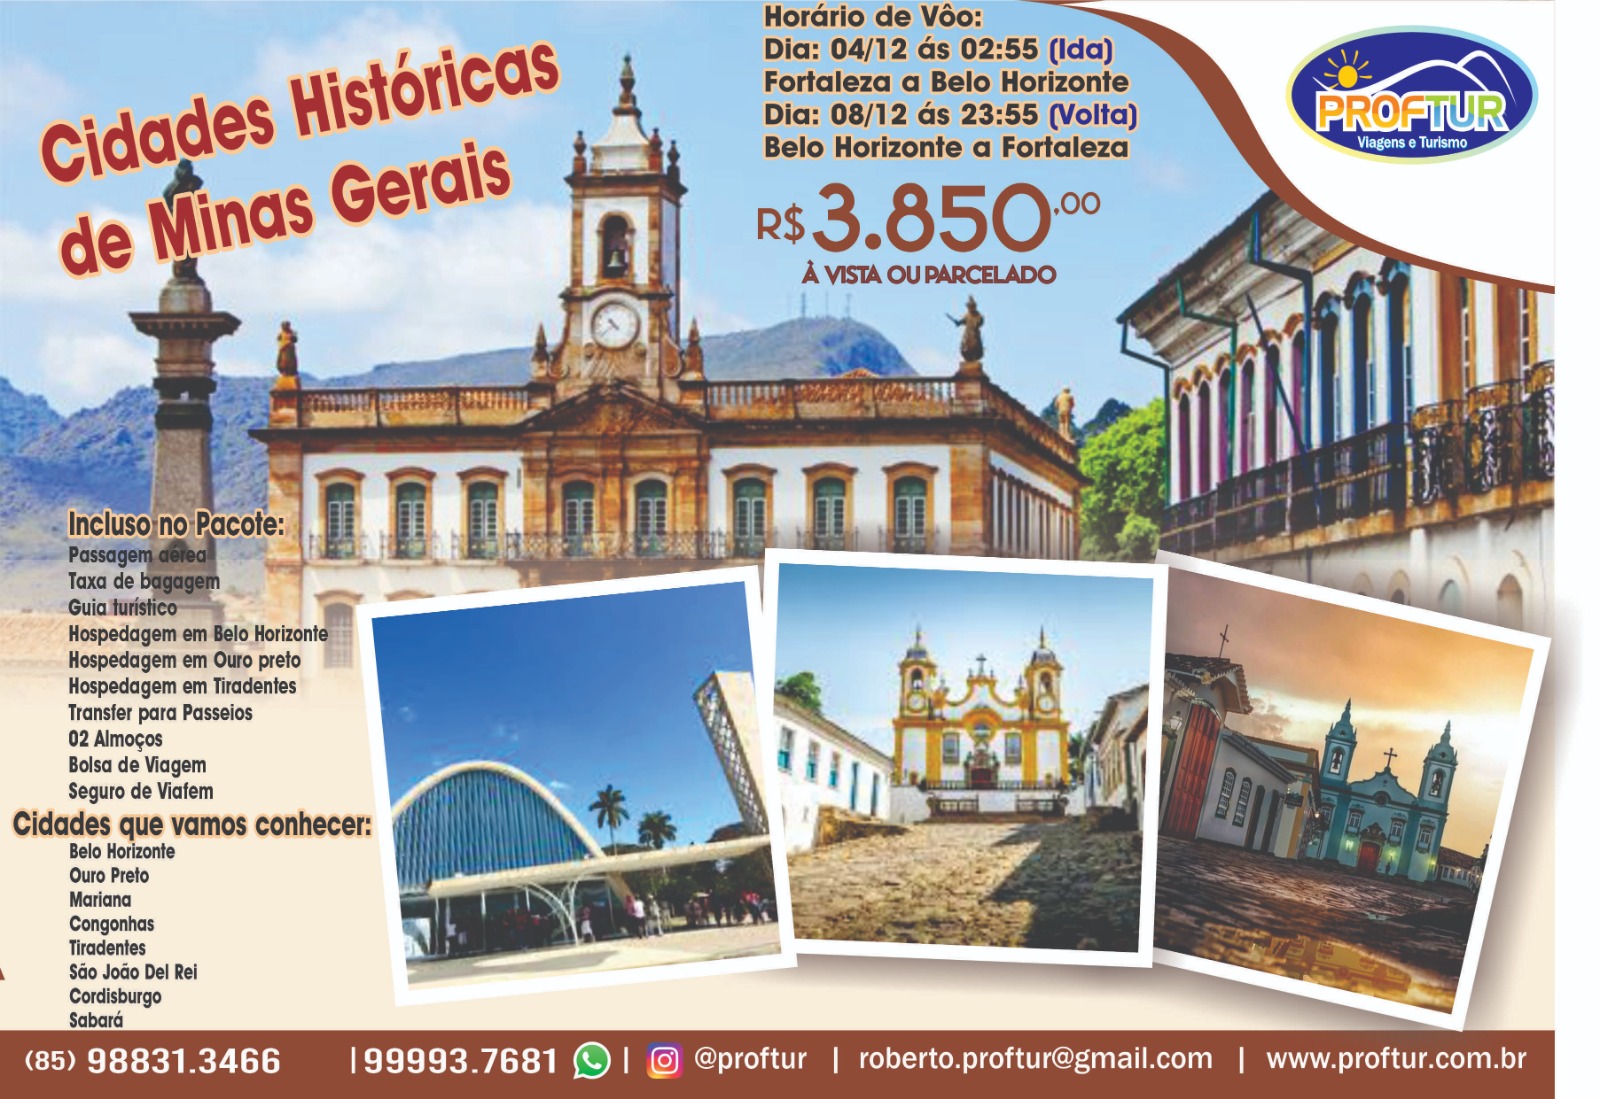 Cidades Histricas de Minas Gerais